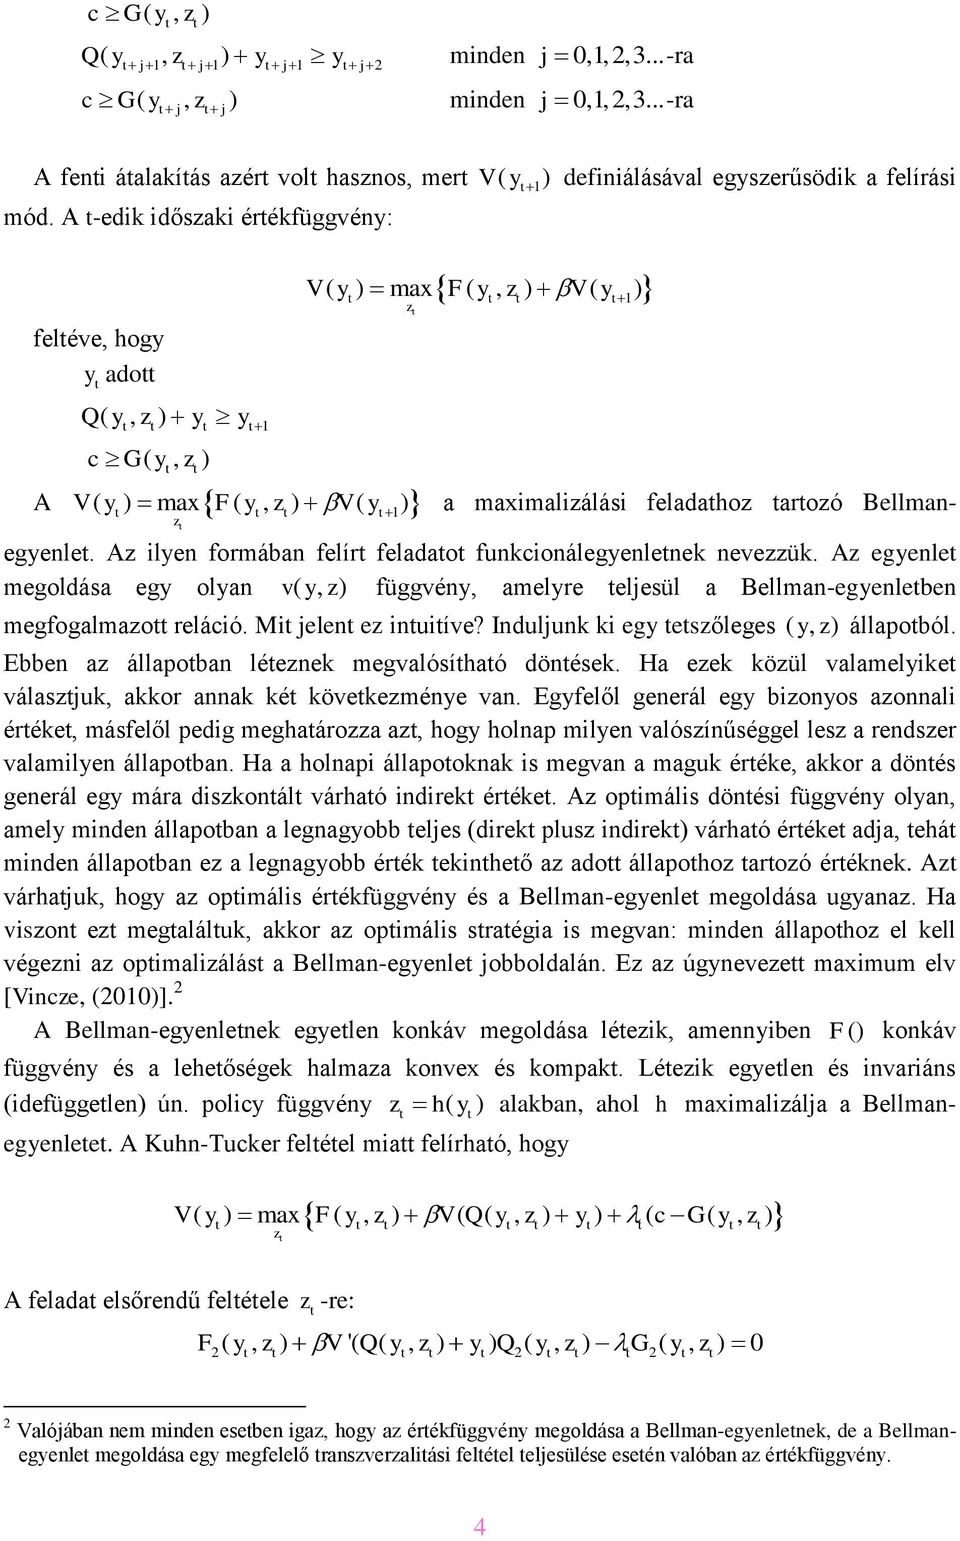 Az lyen formában felír feladao funkconálegyenlenek nevezzük. Az egyenle megoldása egy olyan v( y, z ) függvény, amelyre eljesül a Bellman-egyenleben megfogalmazo relácó. M jelen ez nuíve?